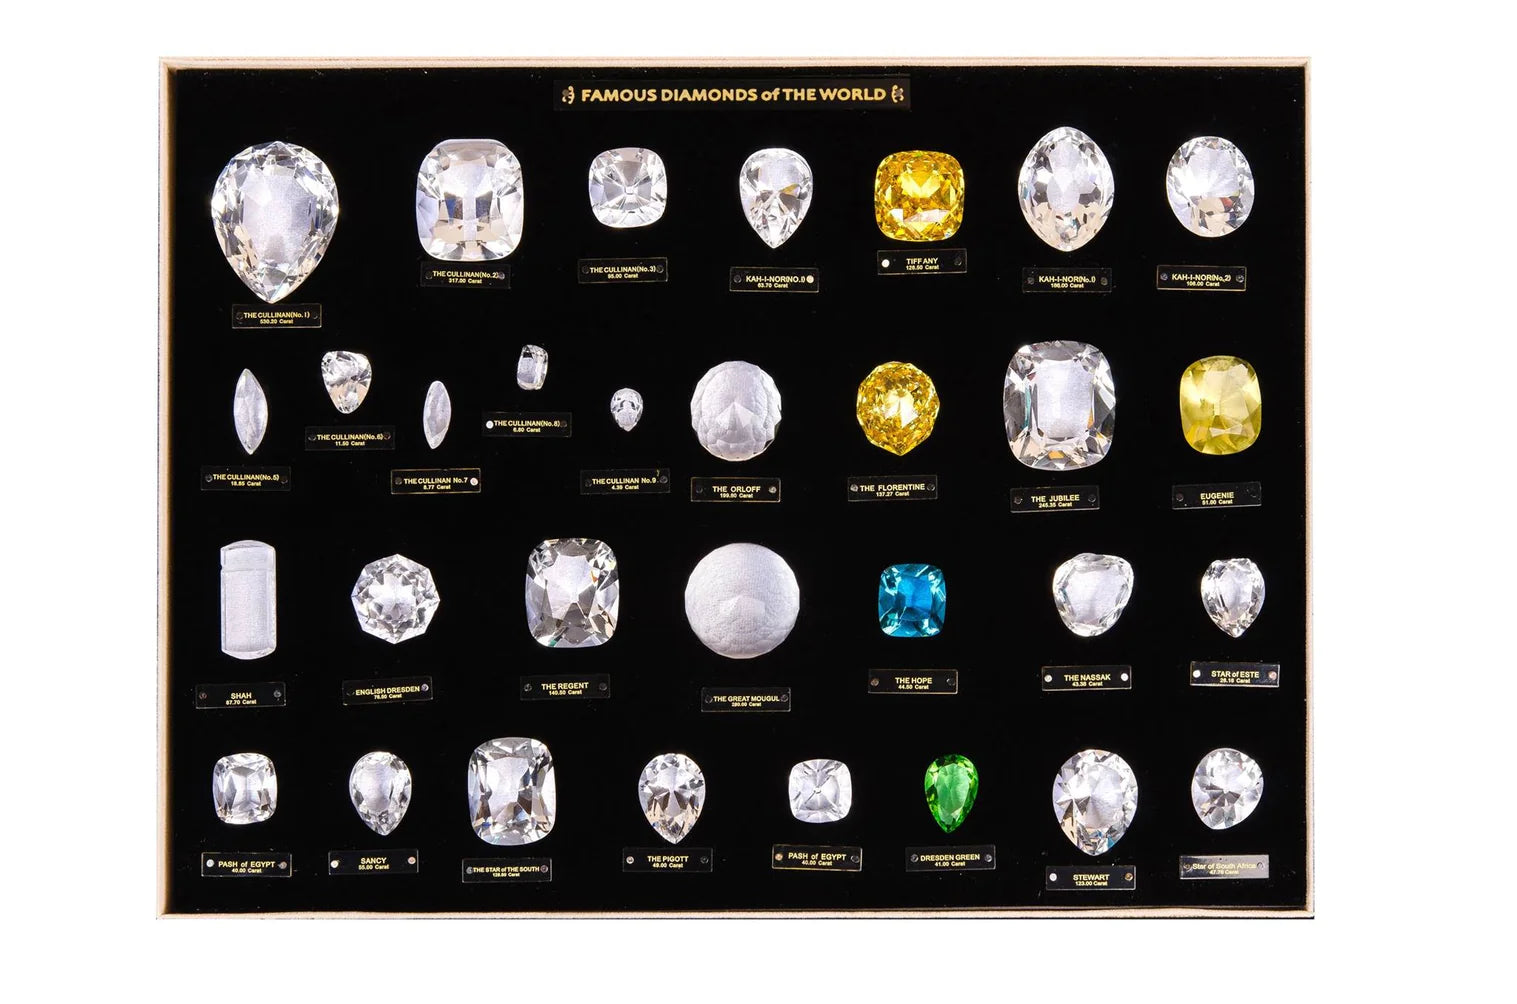 Colecție exclusivă de replici ale diamantelor celebre din lume